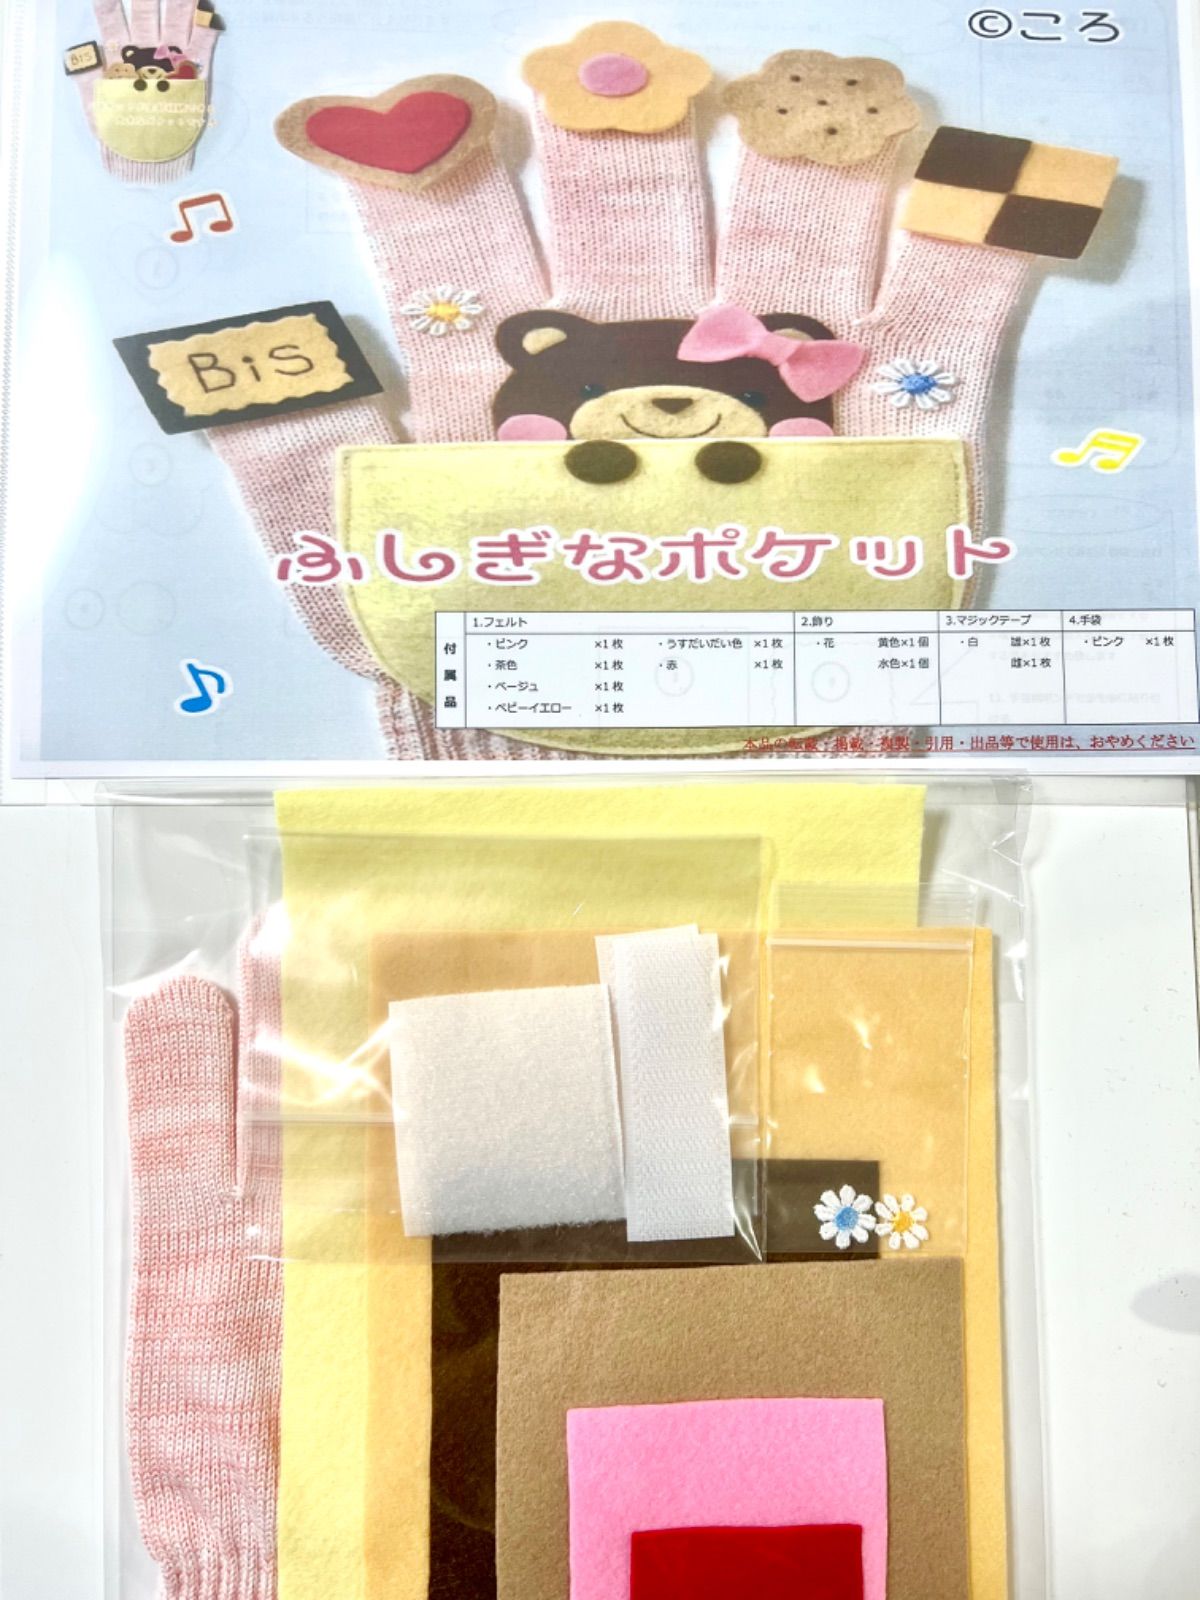 手袋シアターおまとめ買い9点セット 9599円→8500円 - クラフト・布製品